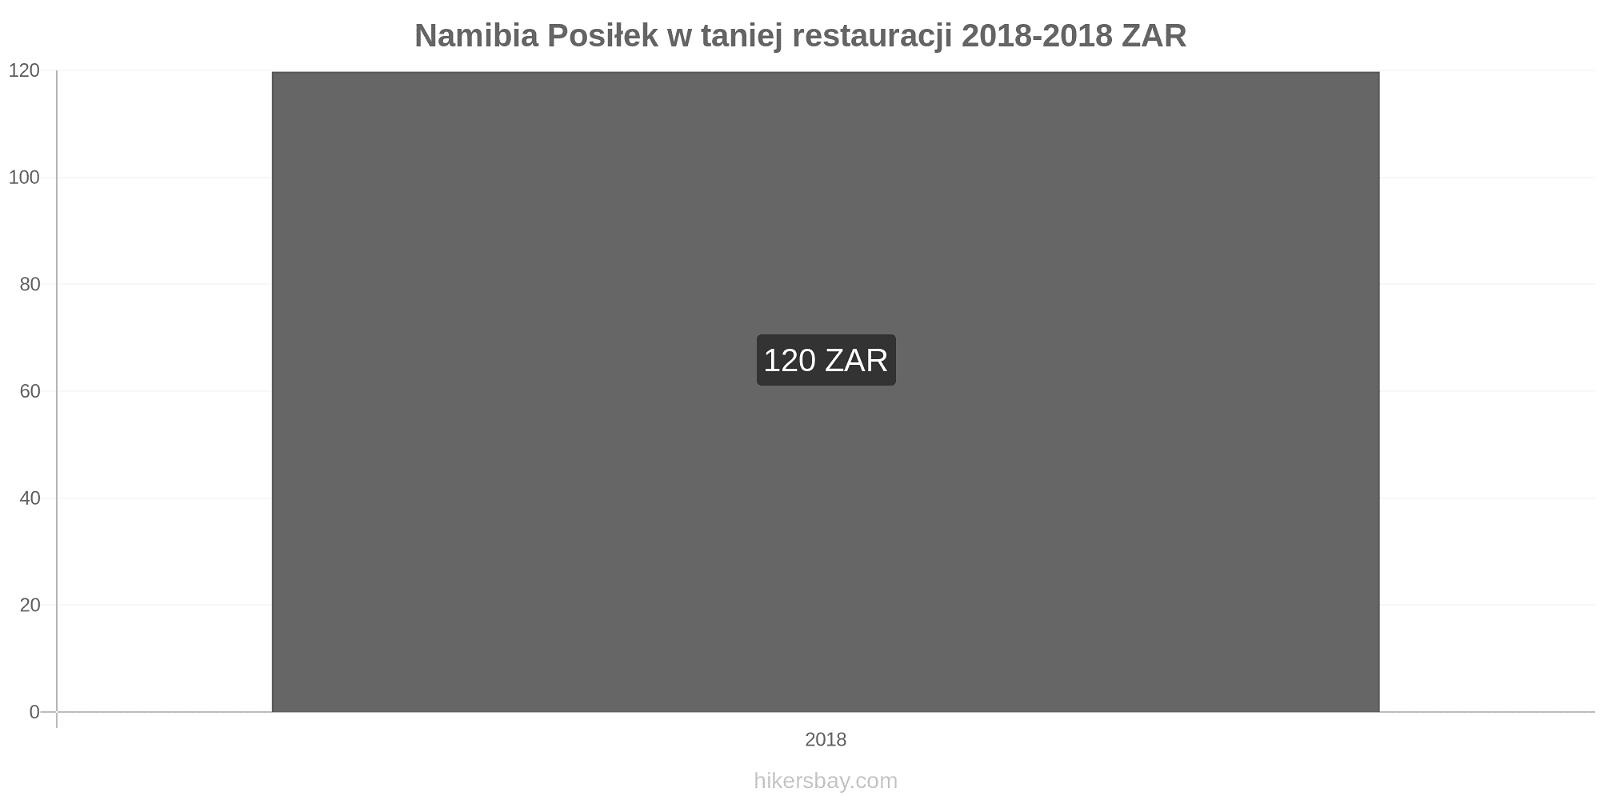 Namibia zmiany cen Posiłek w taniej restauracji hikersbay.com